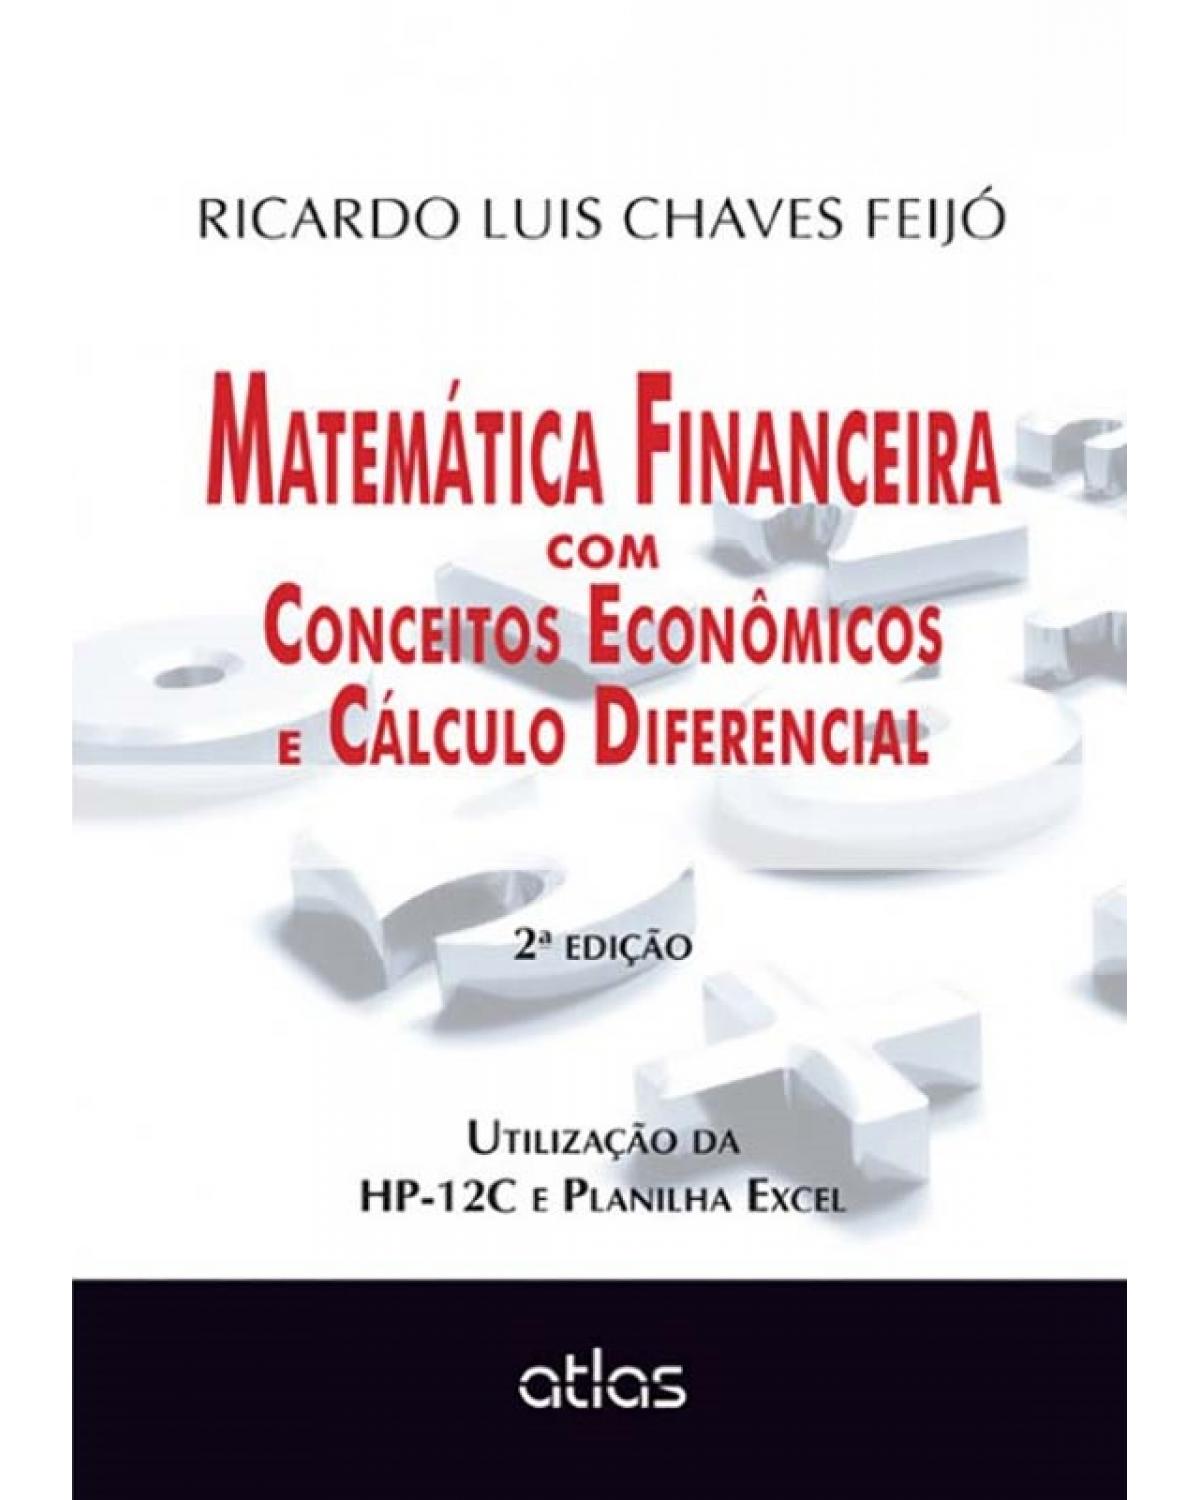 Matemática financeira com conceitos econômicos e cálculo diferencial - Utilização da HP-12C e planilha Excel - 2ª Edição | 2015